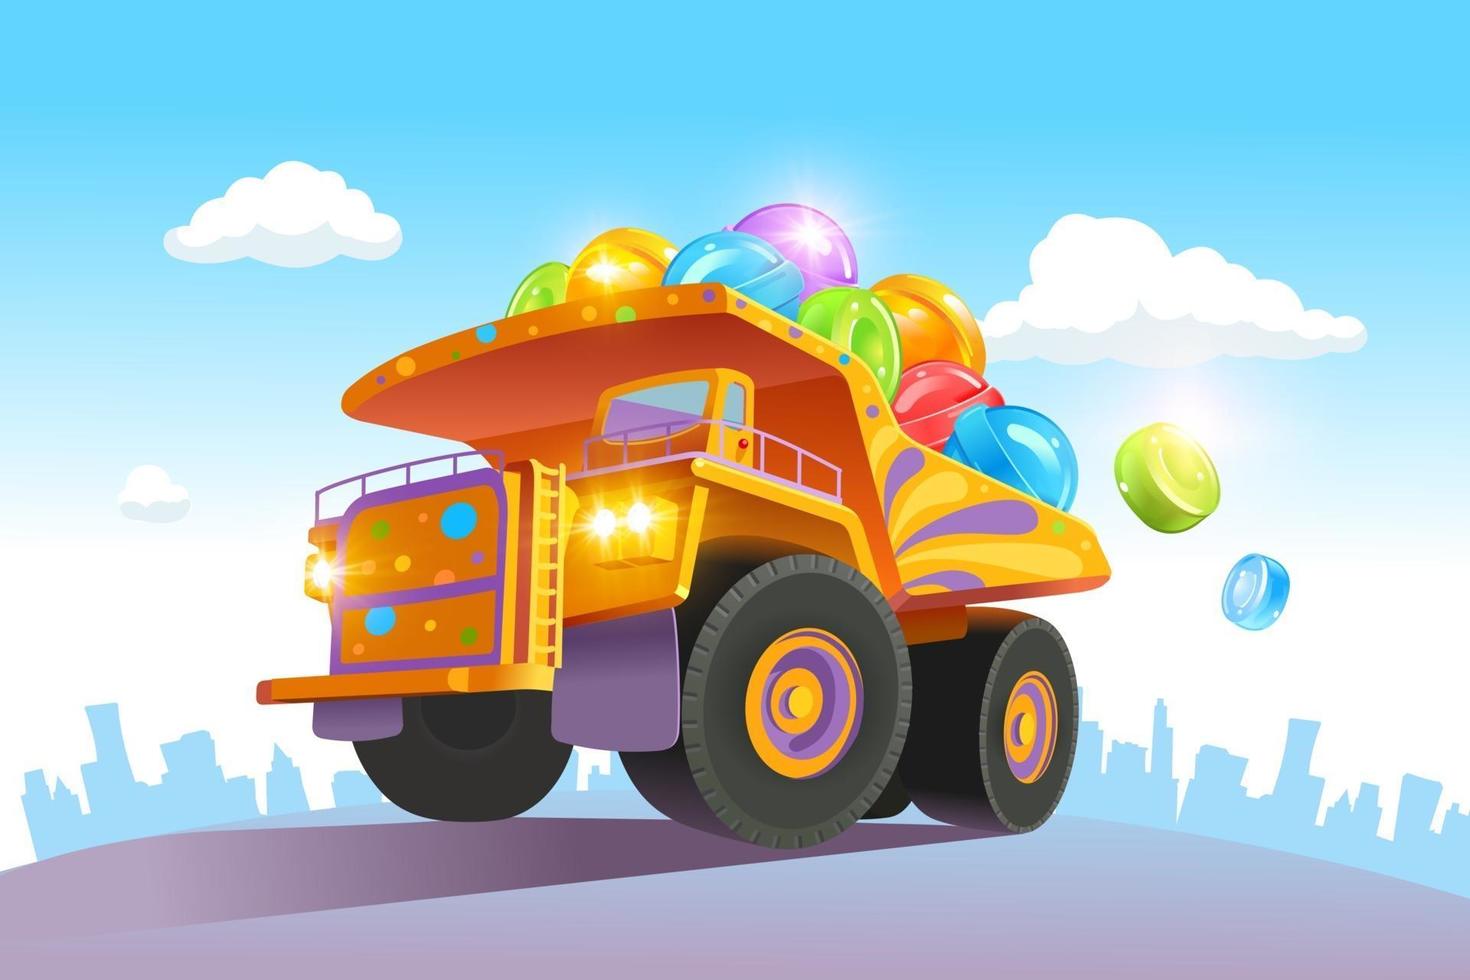 en stor, ljus lastbil har många färgglada godisar. leverans av klubba. vektor illustration